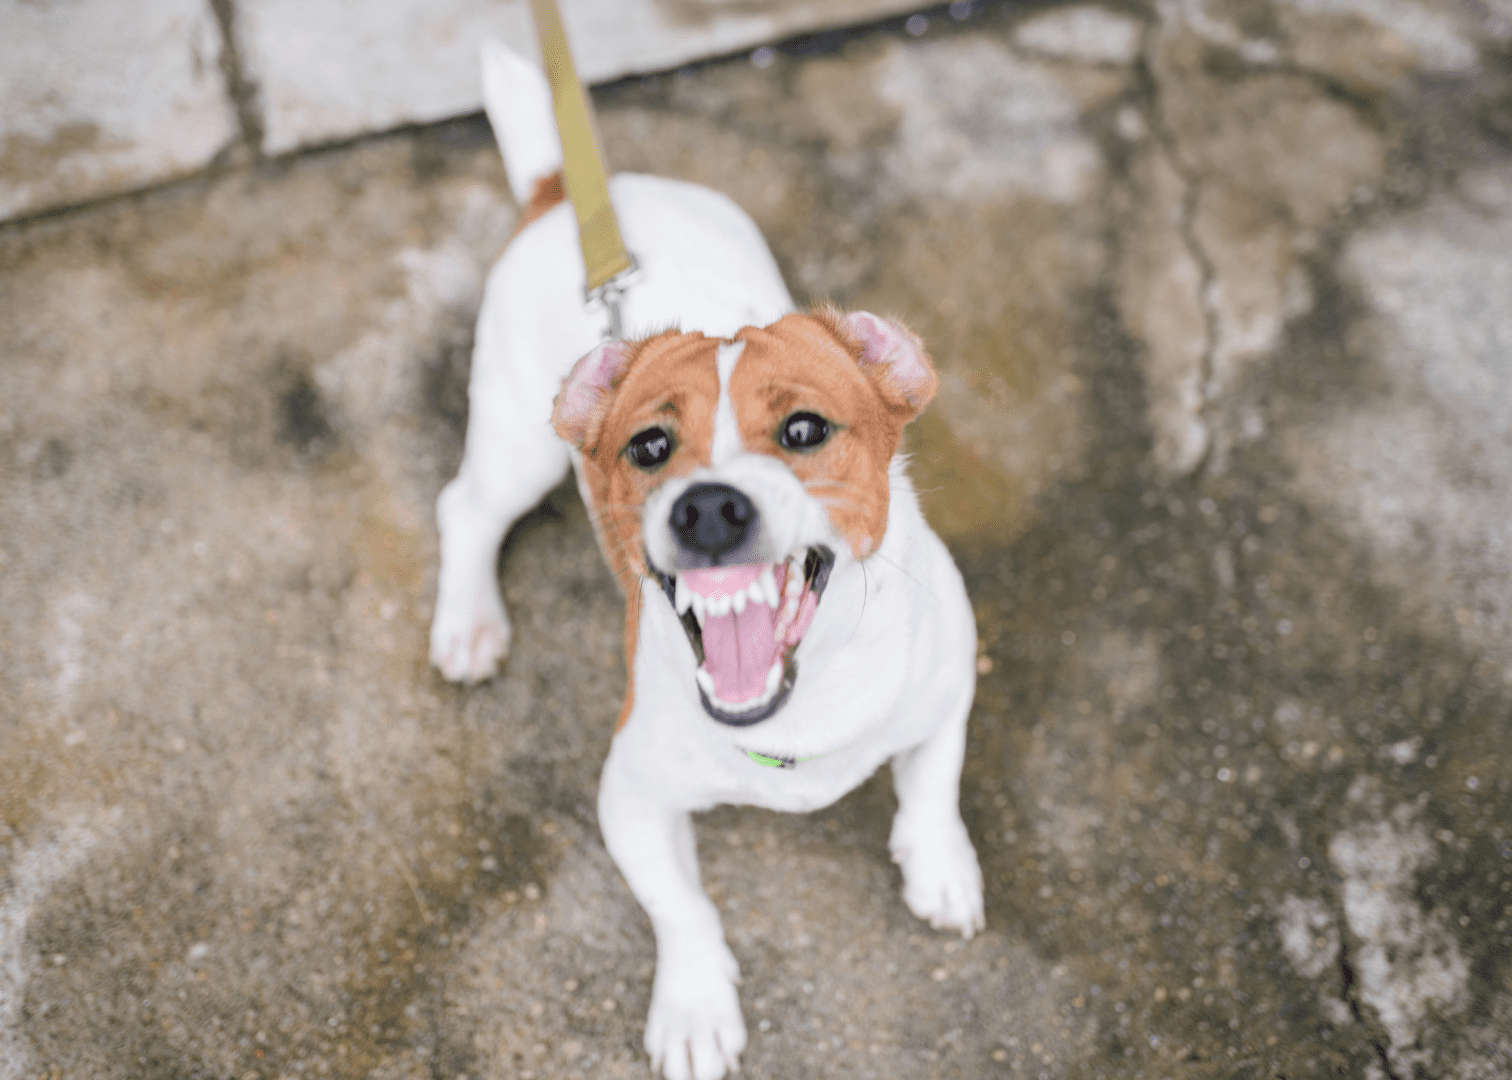 Dog Bite Injury - Filing a Lawsuit